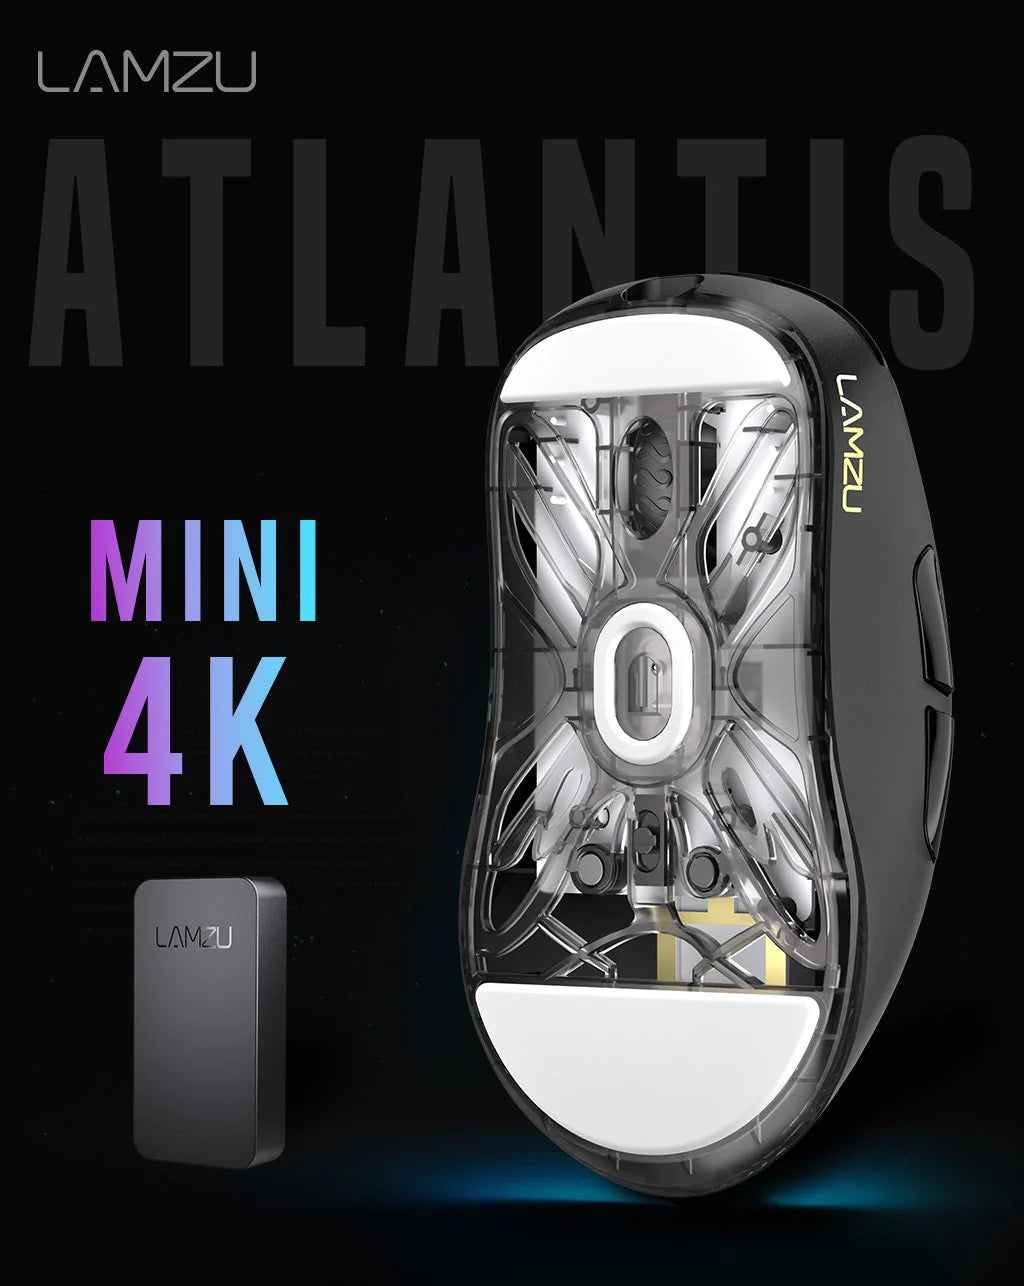 Lamzu Atlantis Mini 4K